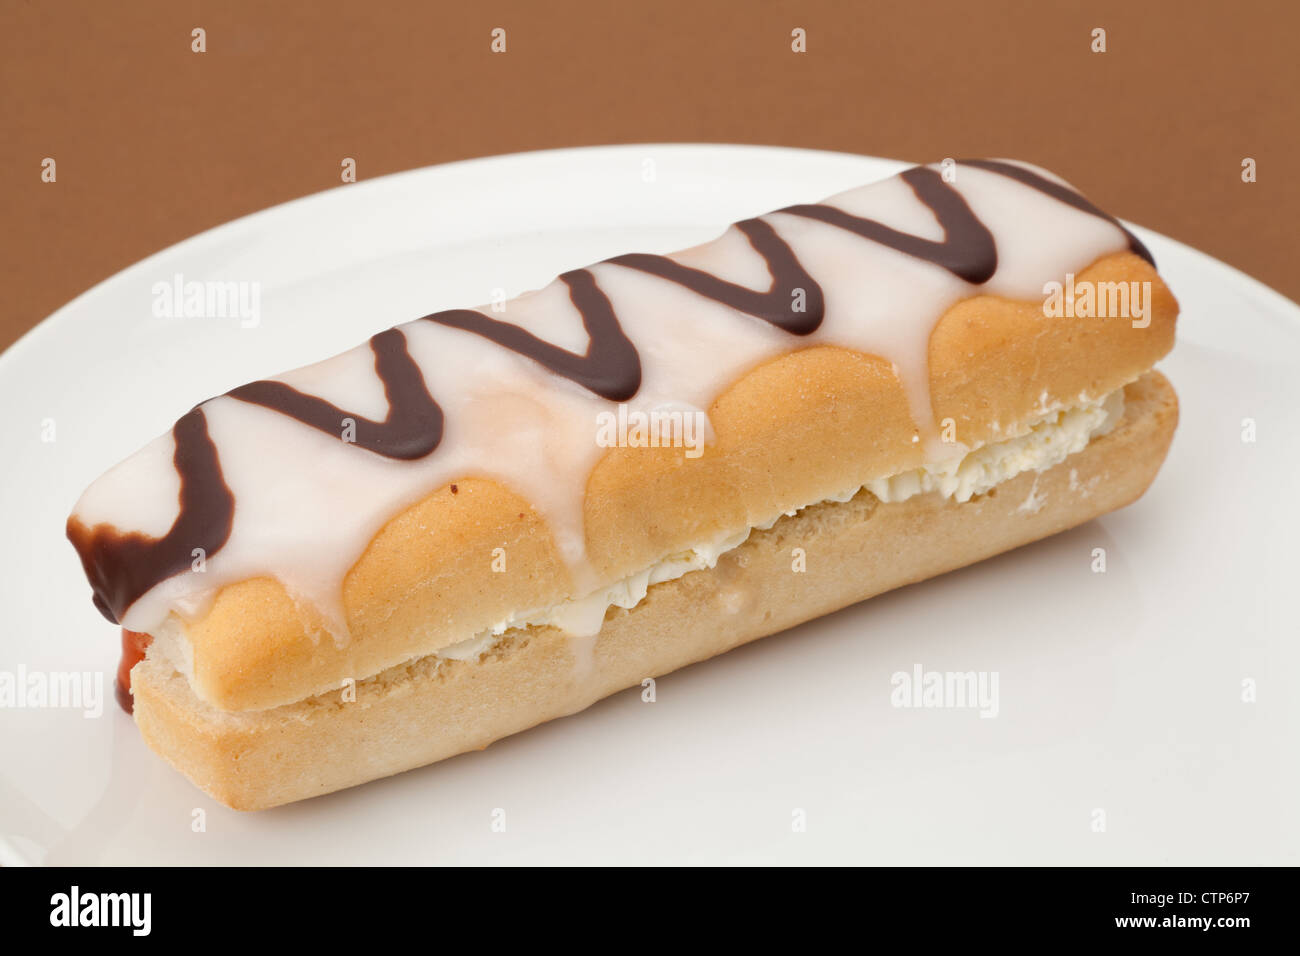 Frische Sahne Donut, serviert auf einem weißen Teller - Studio gedreht mit einem einfarbigen Hintergrund und geringe Schärfentiefe Stockfoto